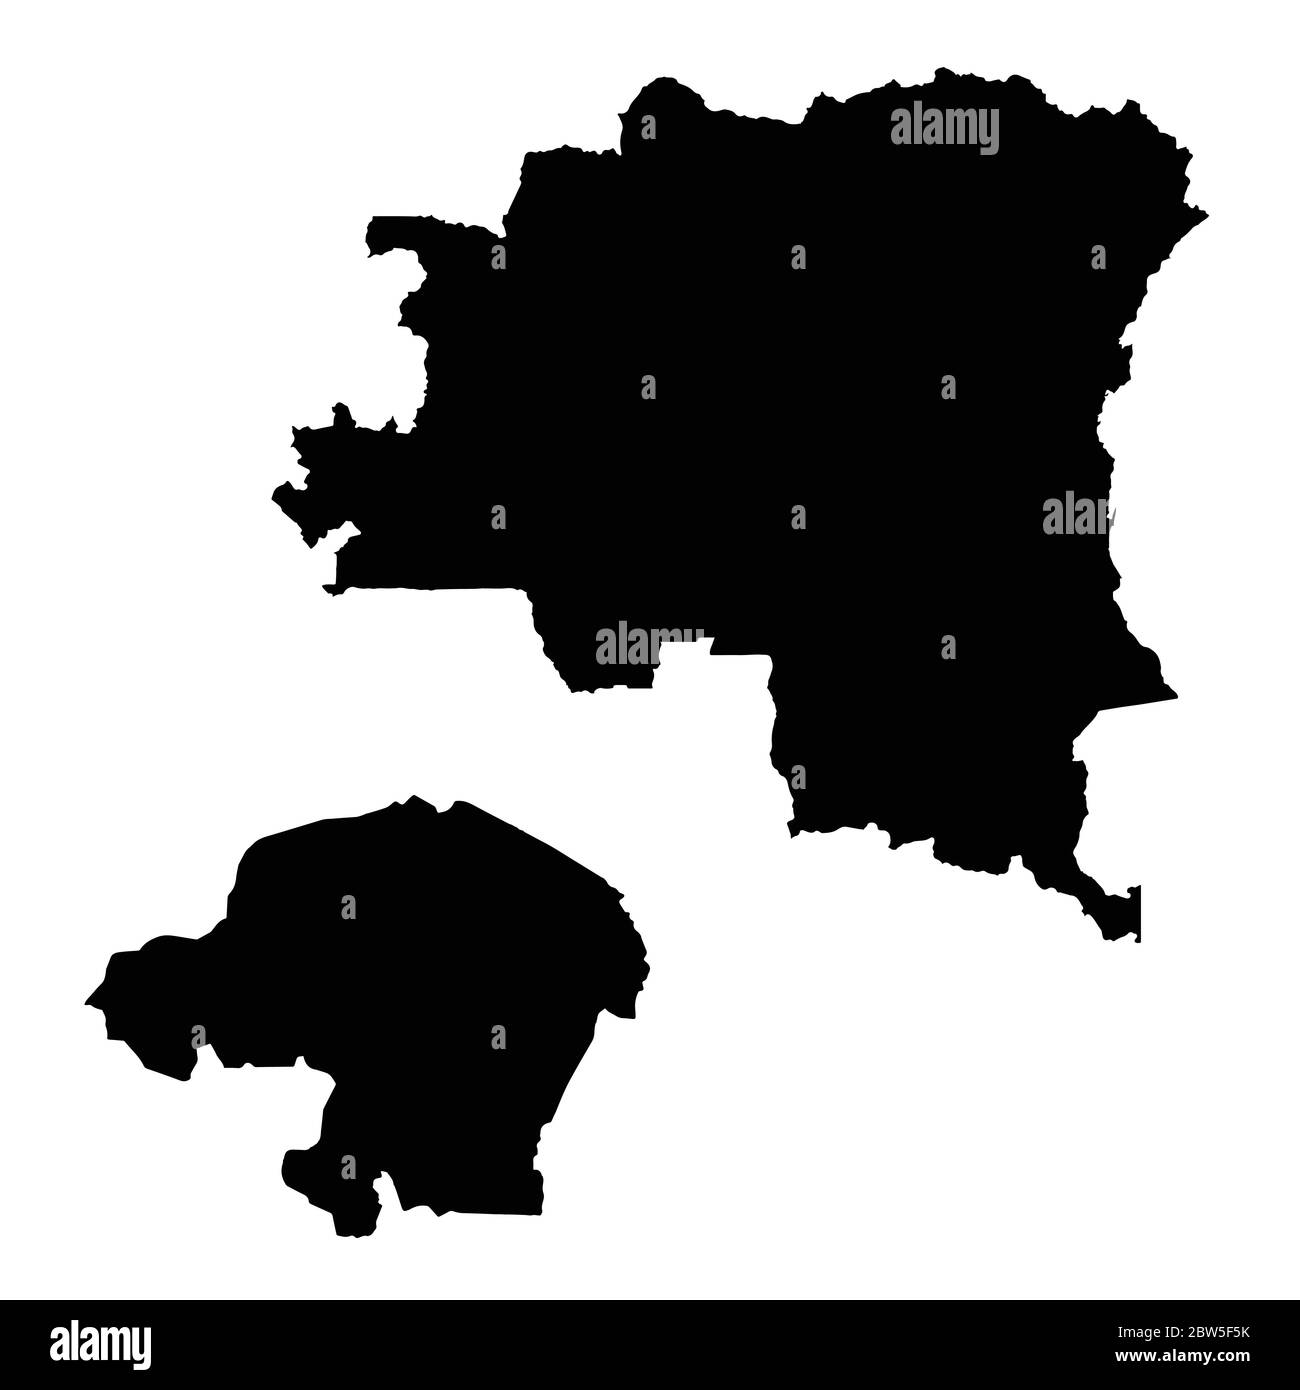 Carte vectorielle République démocratique du Congo et Kinshasa. Pays et capitale. Illustration de vecteur isolé. Noir sur fond blanc. EPS 10 Ilustr Illustration de Vecteur